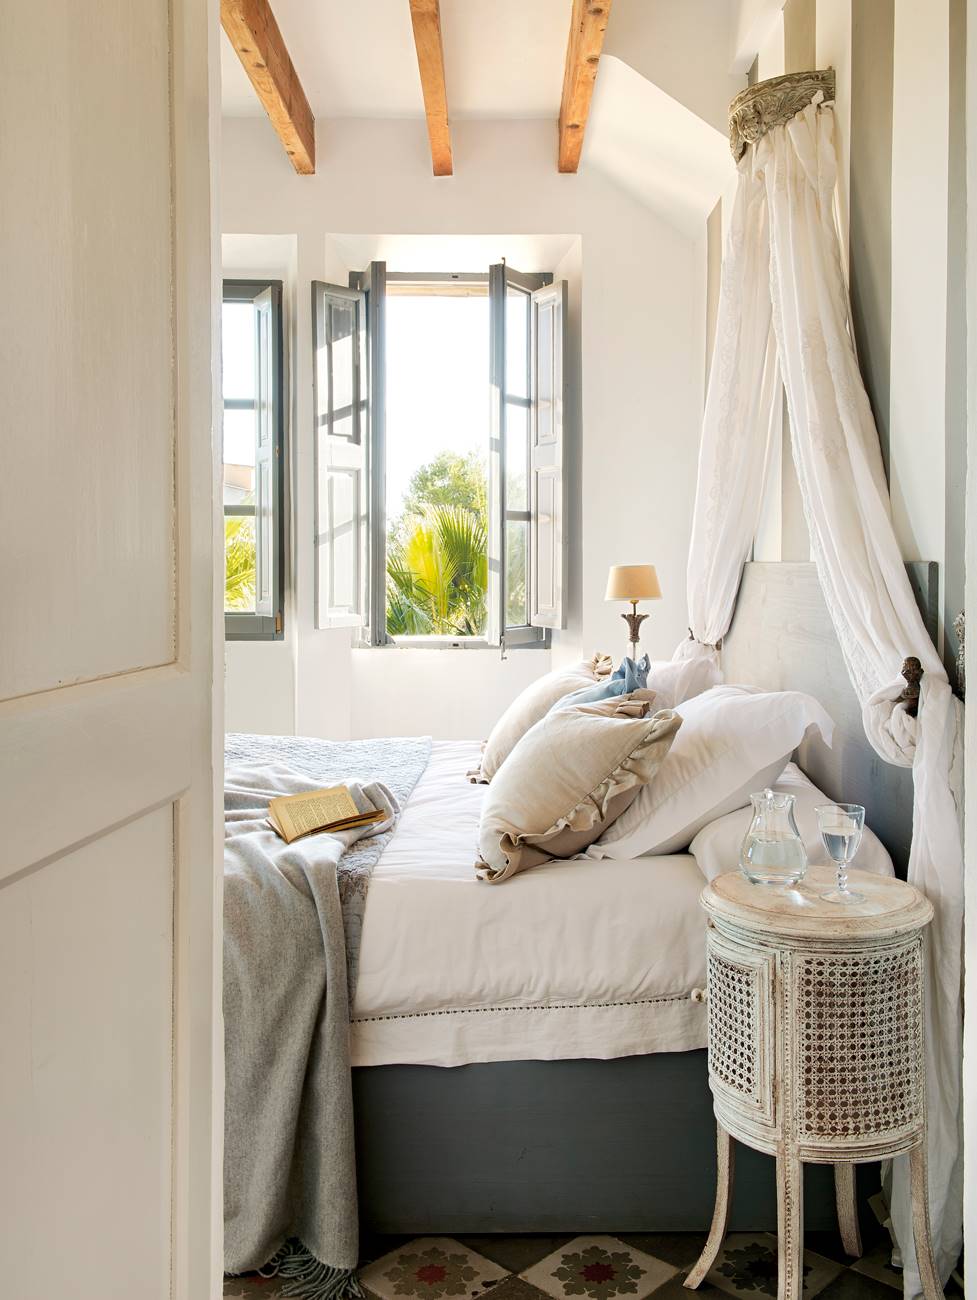 Dormitorio con mesilla de noche de mimbre, vigas de madera, ventana con porticones de color azul y mosquitera 00378440